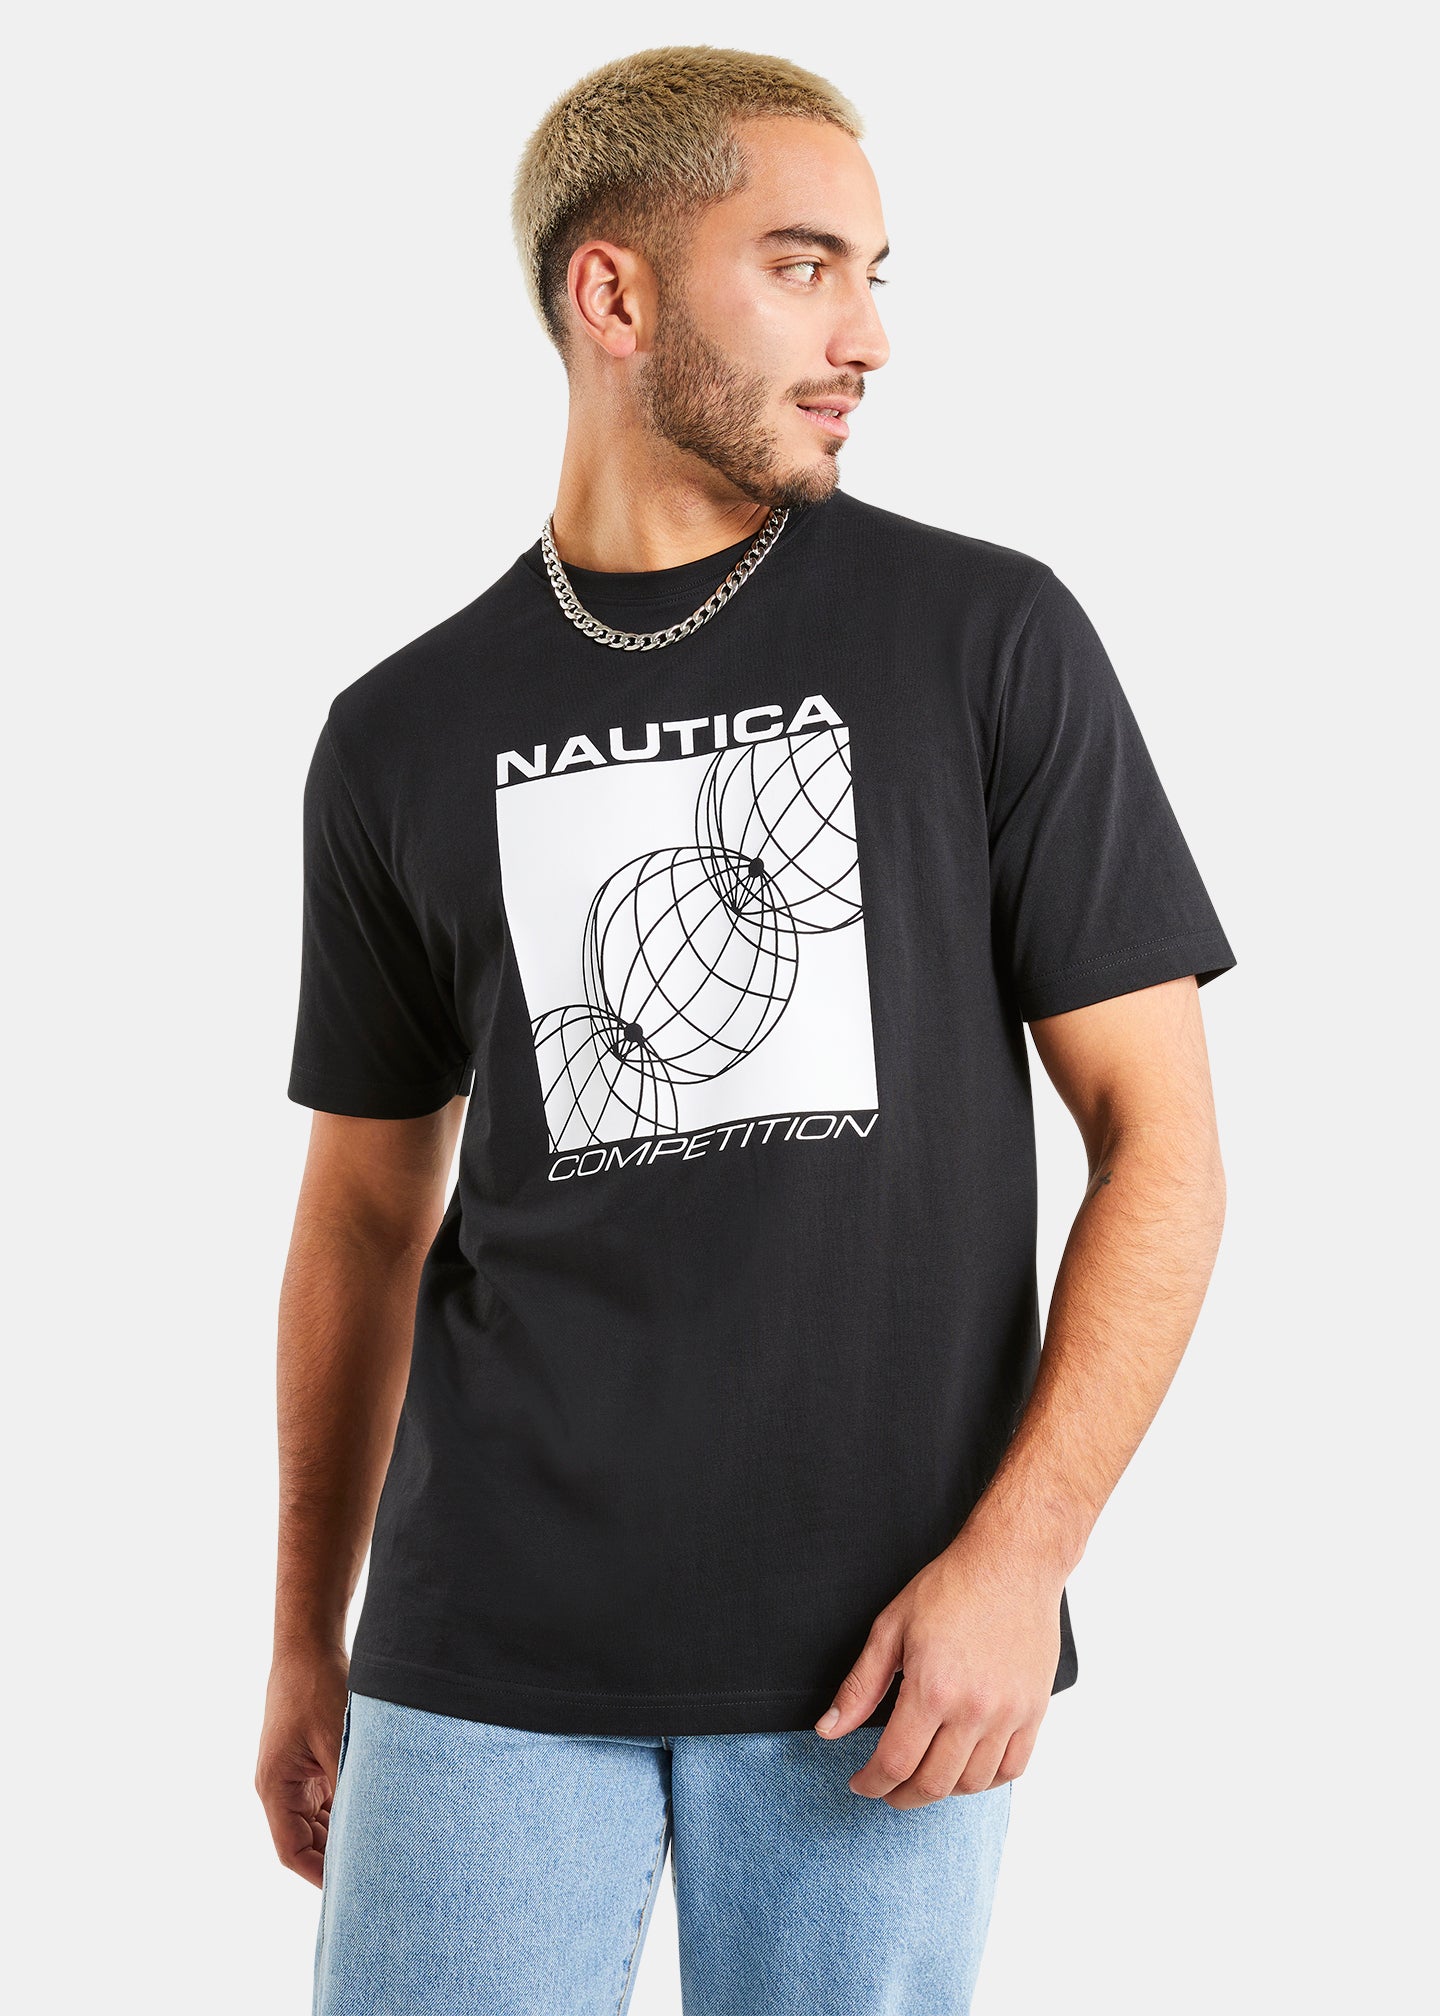 Nautica Competition Remington T-Shirt - Black - Front